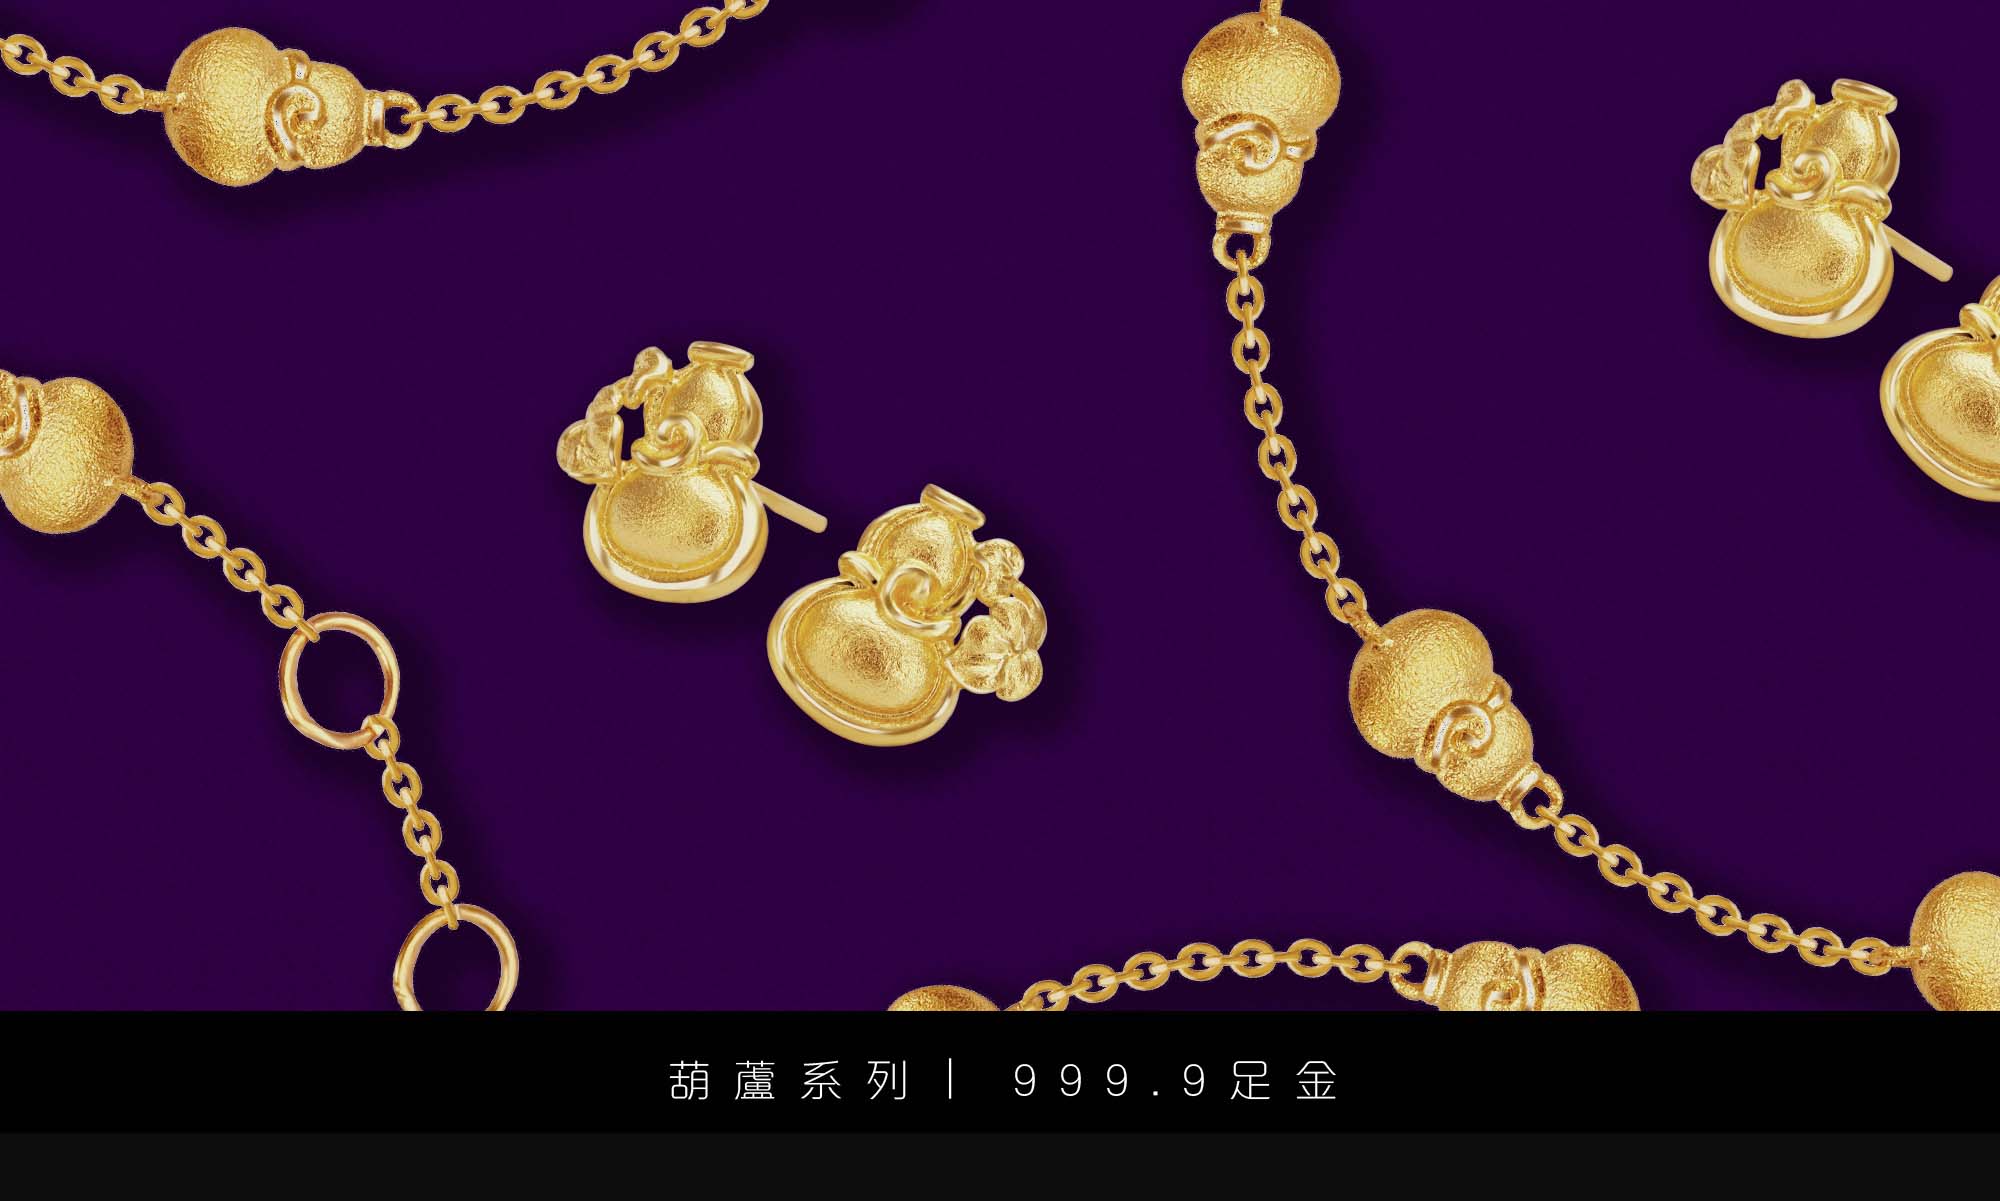 景福珠寶新一代999.9足金葫蘆系列 滿載溫暖祝福的最佳禮物